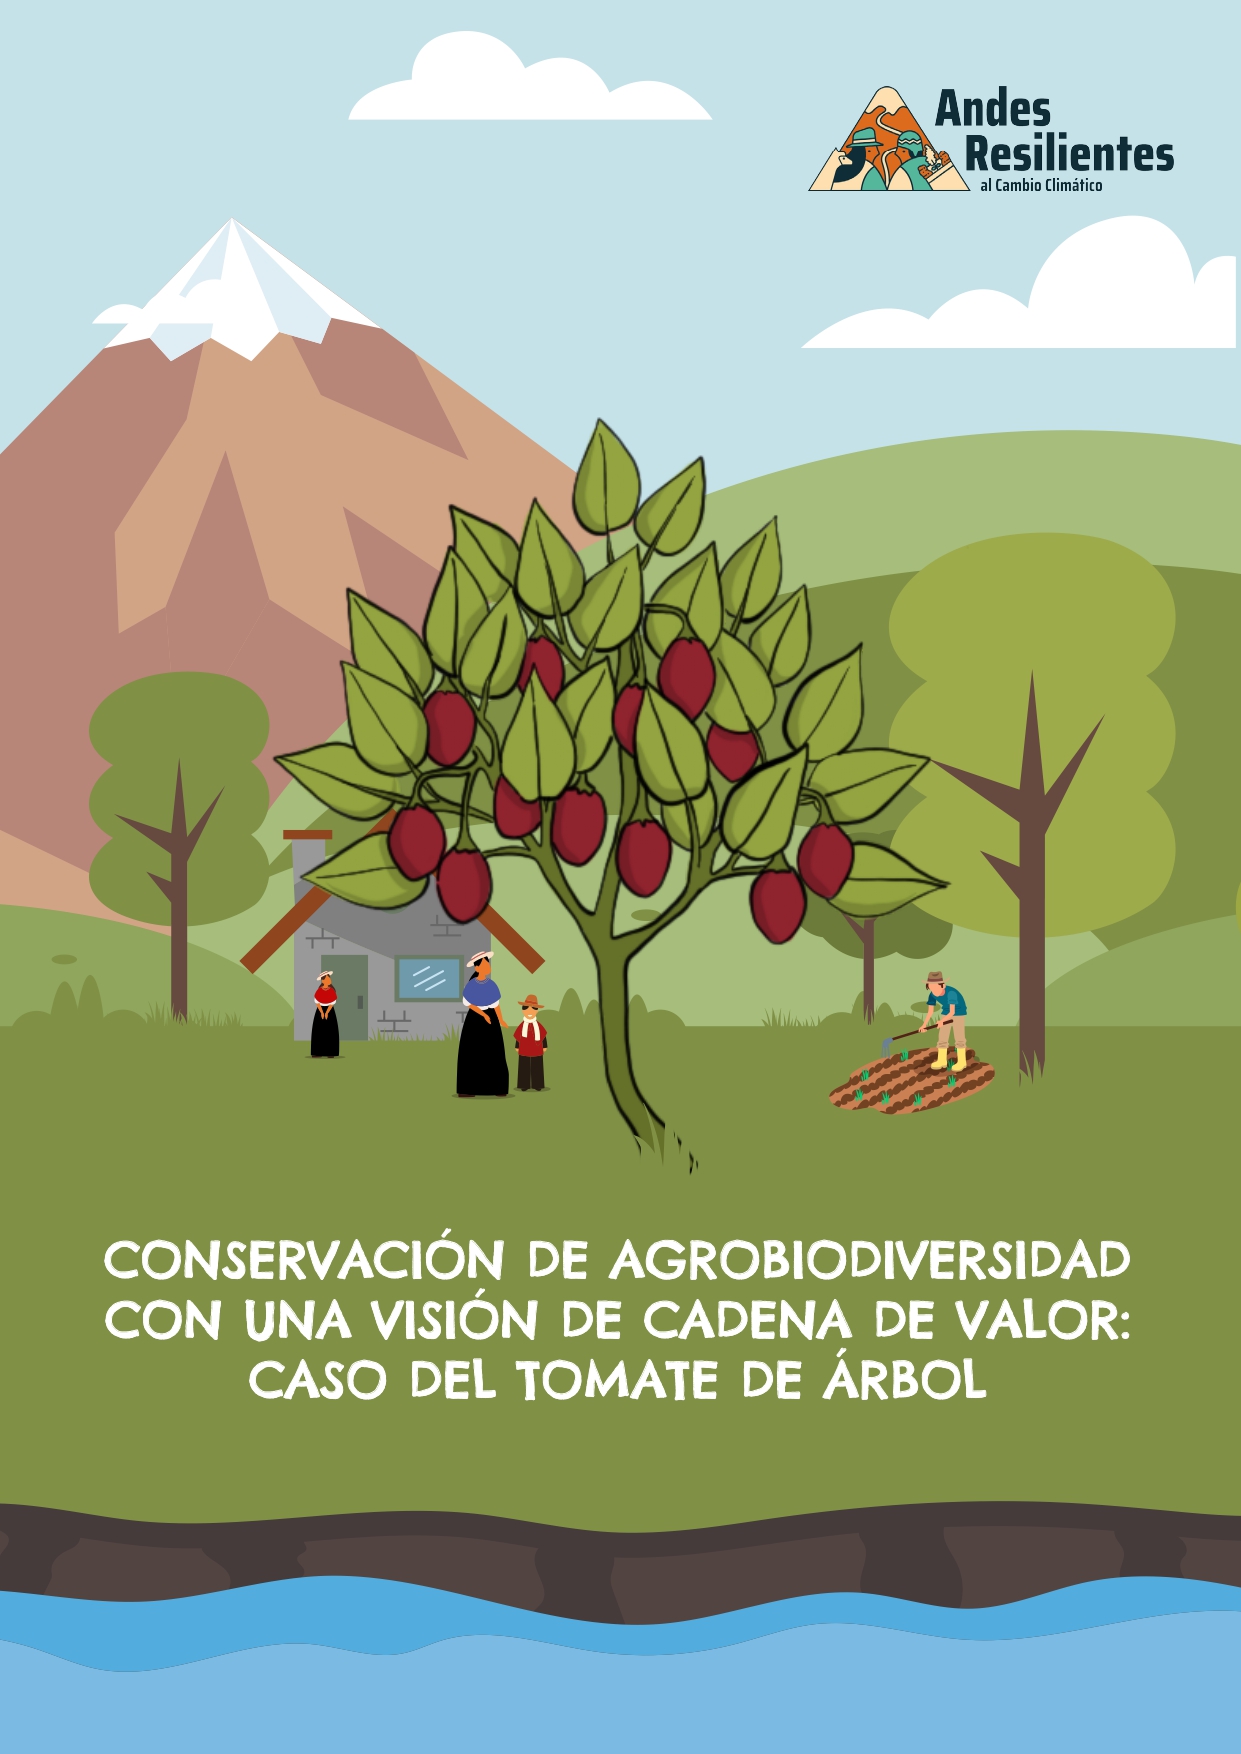 CONSERVACIÓN DE AGROBIODIVERSIDAD CON UNA VISIÓN DE CADENA DE VALOR: CASO  DEL TOMATE DE ÁRBOL - Andes Resilientes al Cambio Climático